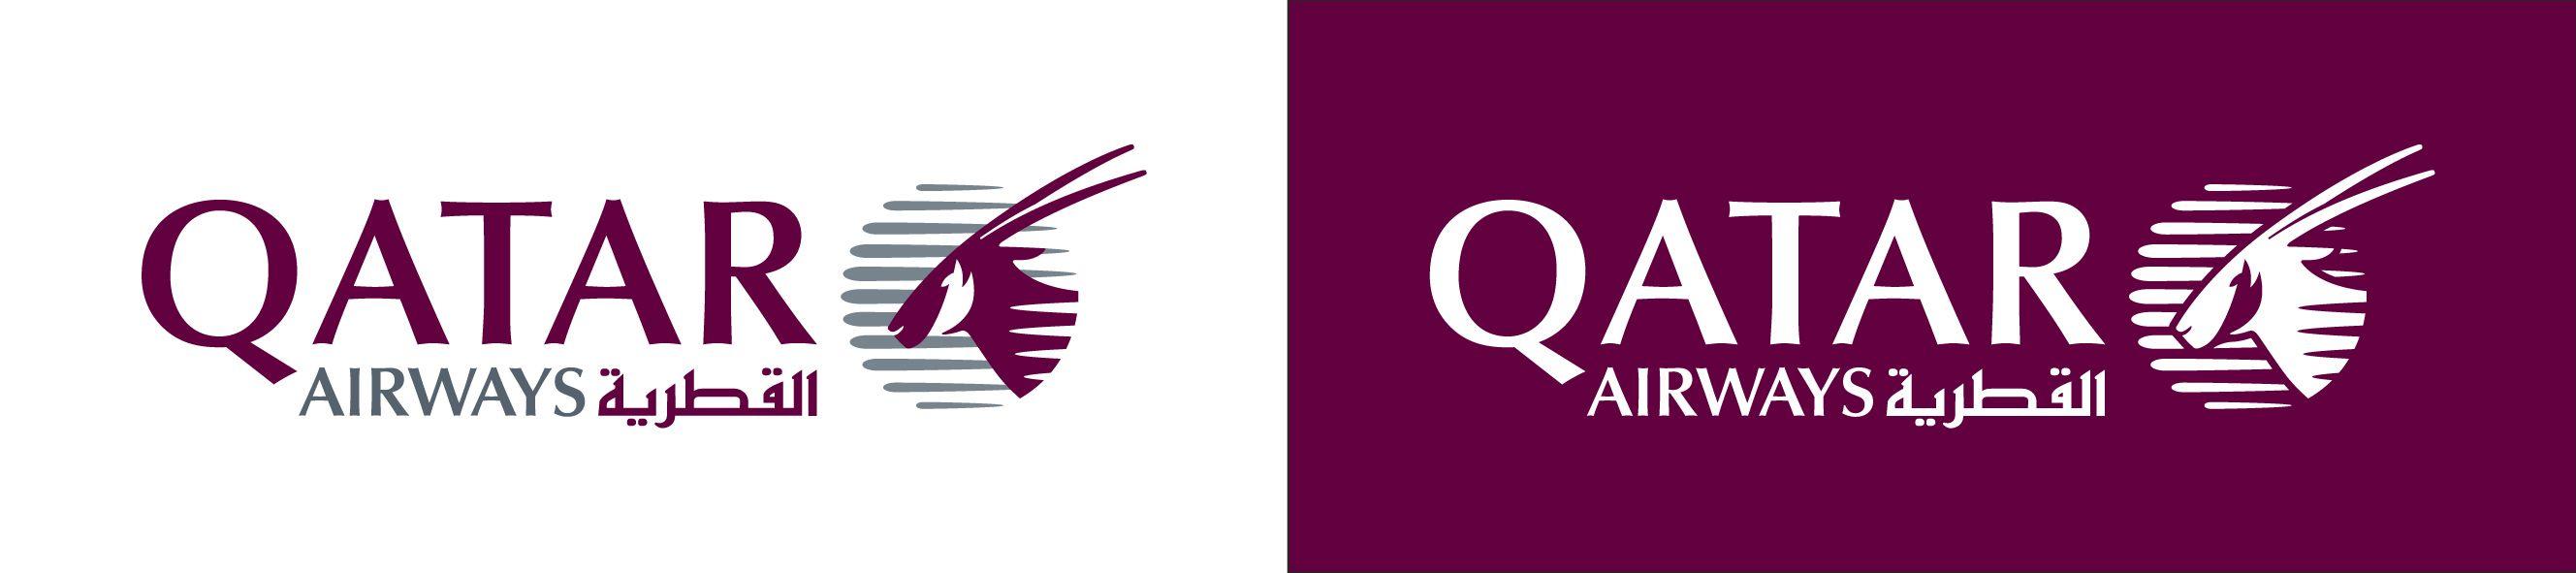 Qatar Logo - Qatar airways Logos